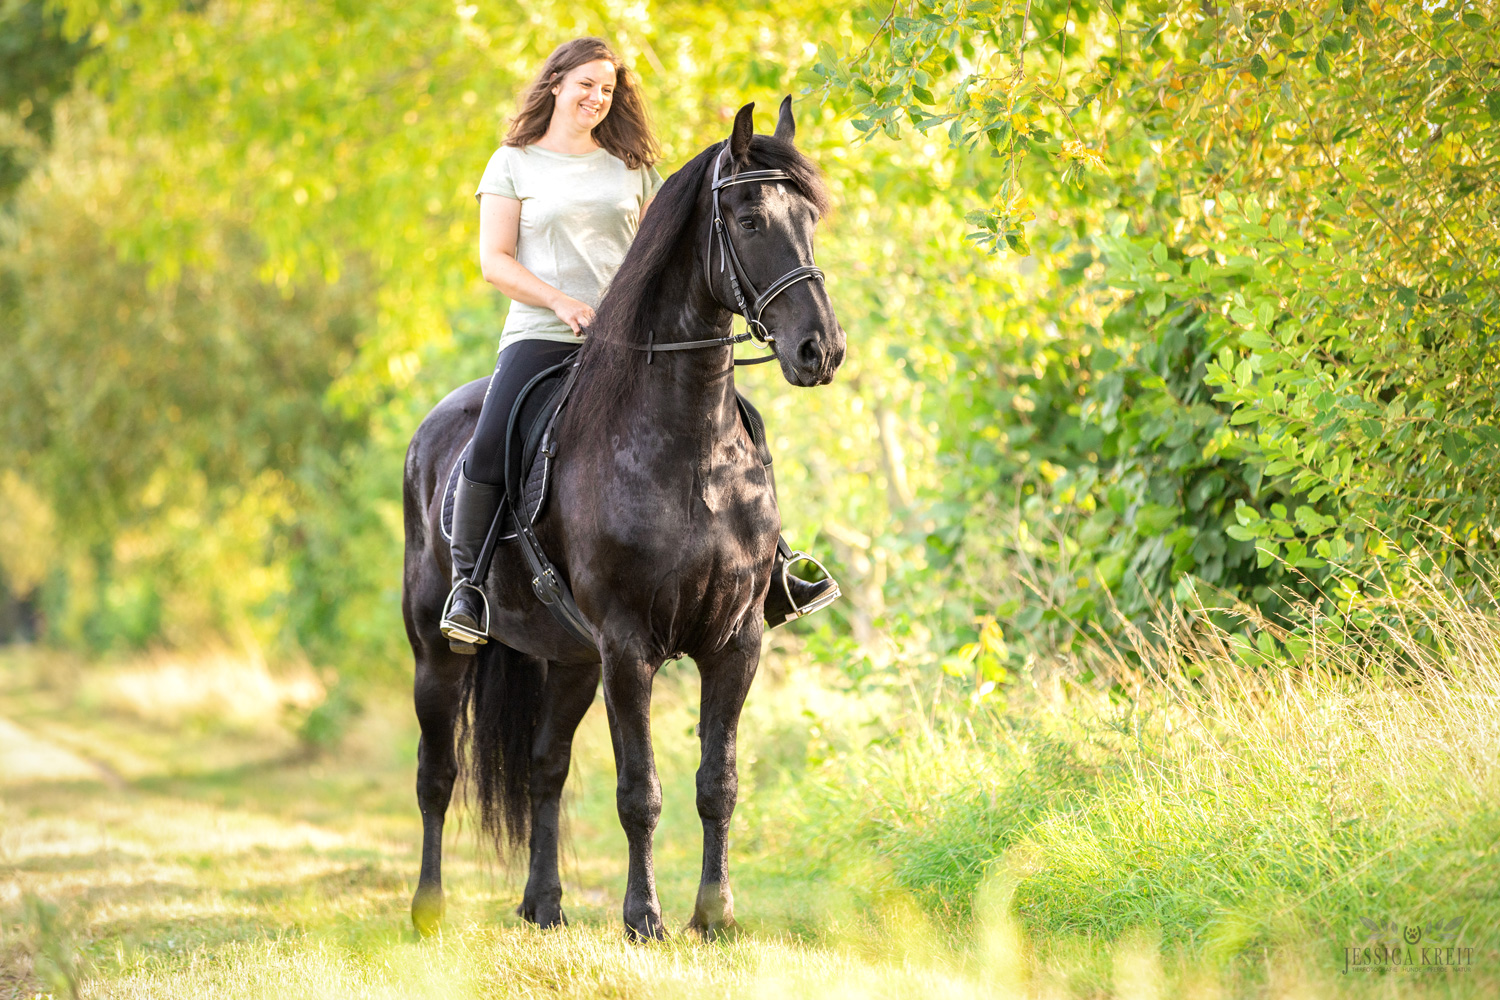 Pferdefotografie von Tierfotografie Jessica Kreit aus Hannover. Porträt von Pferd und Reiterin